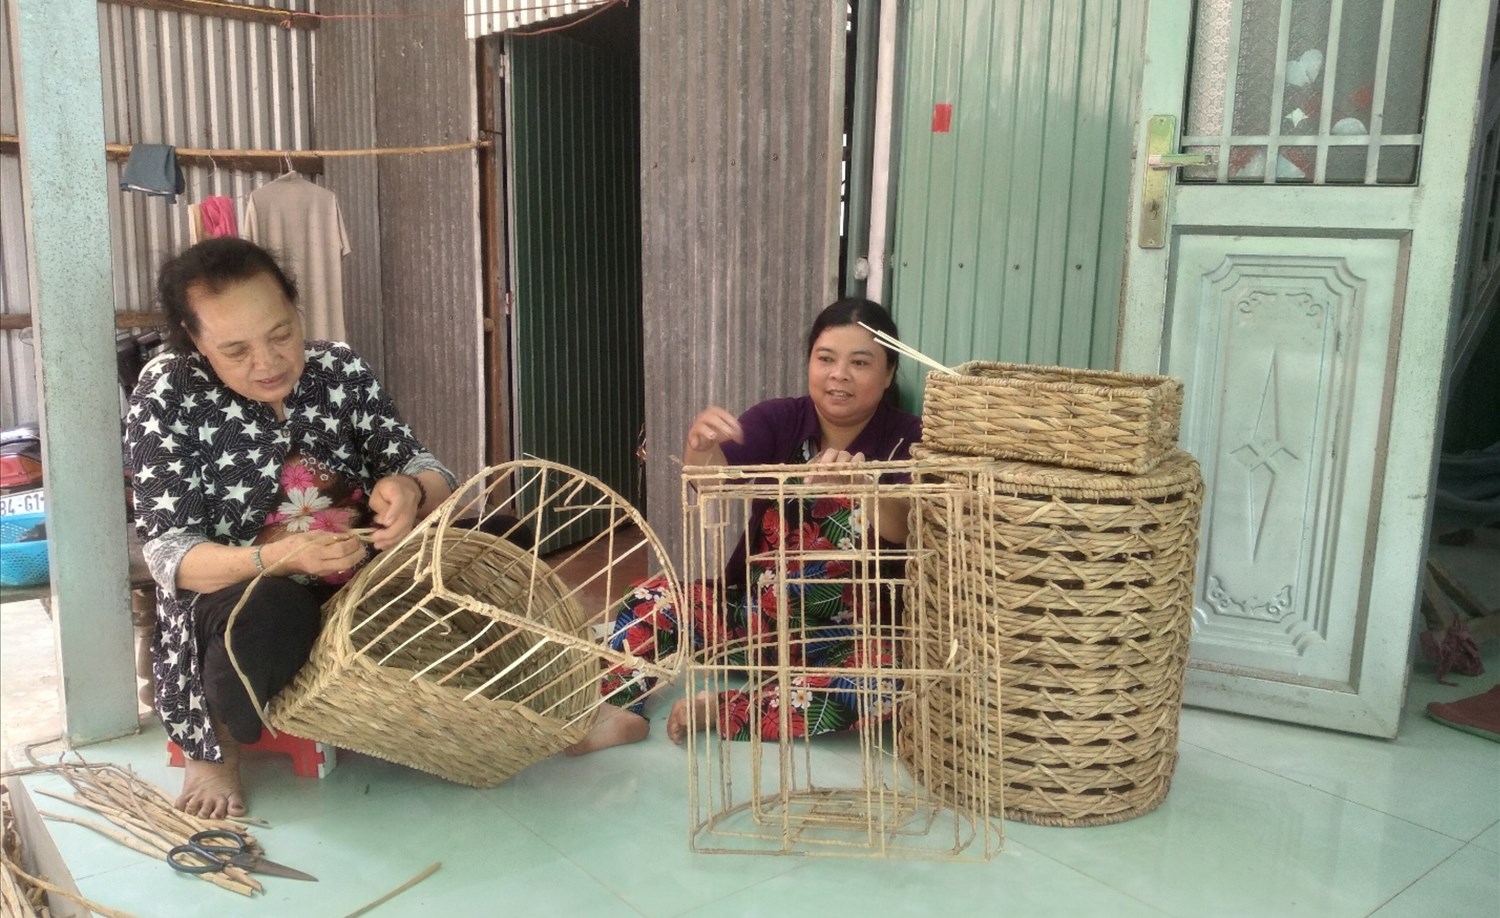 Chị Trần Kim Thùy (bìa phải) ở ấp Mỹ Tân, xã Mỹ Bình (thị xã Ngã Năm) nhận nguyên liệu lục bình đan giỏ về nhà những lúc rãnh rỗi, giúp chị có thêm thu nhập